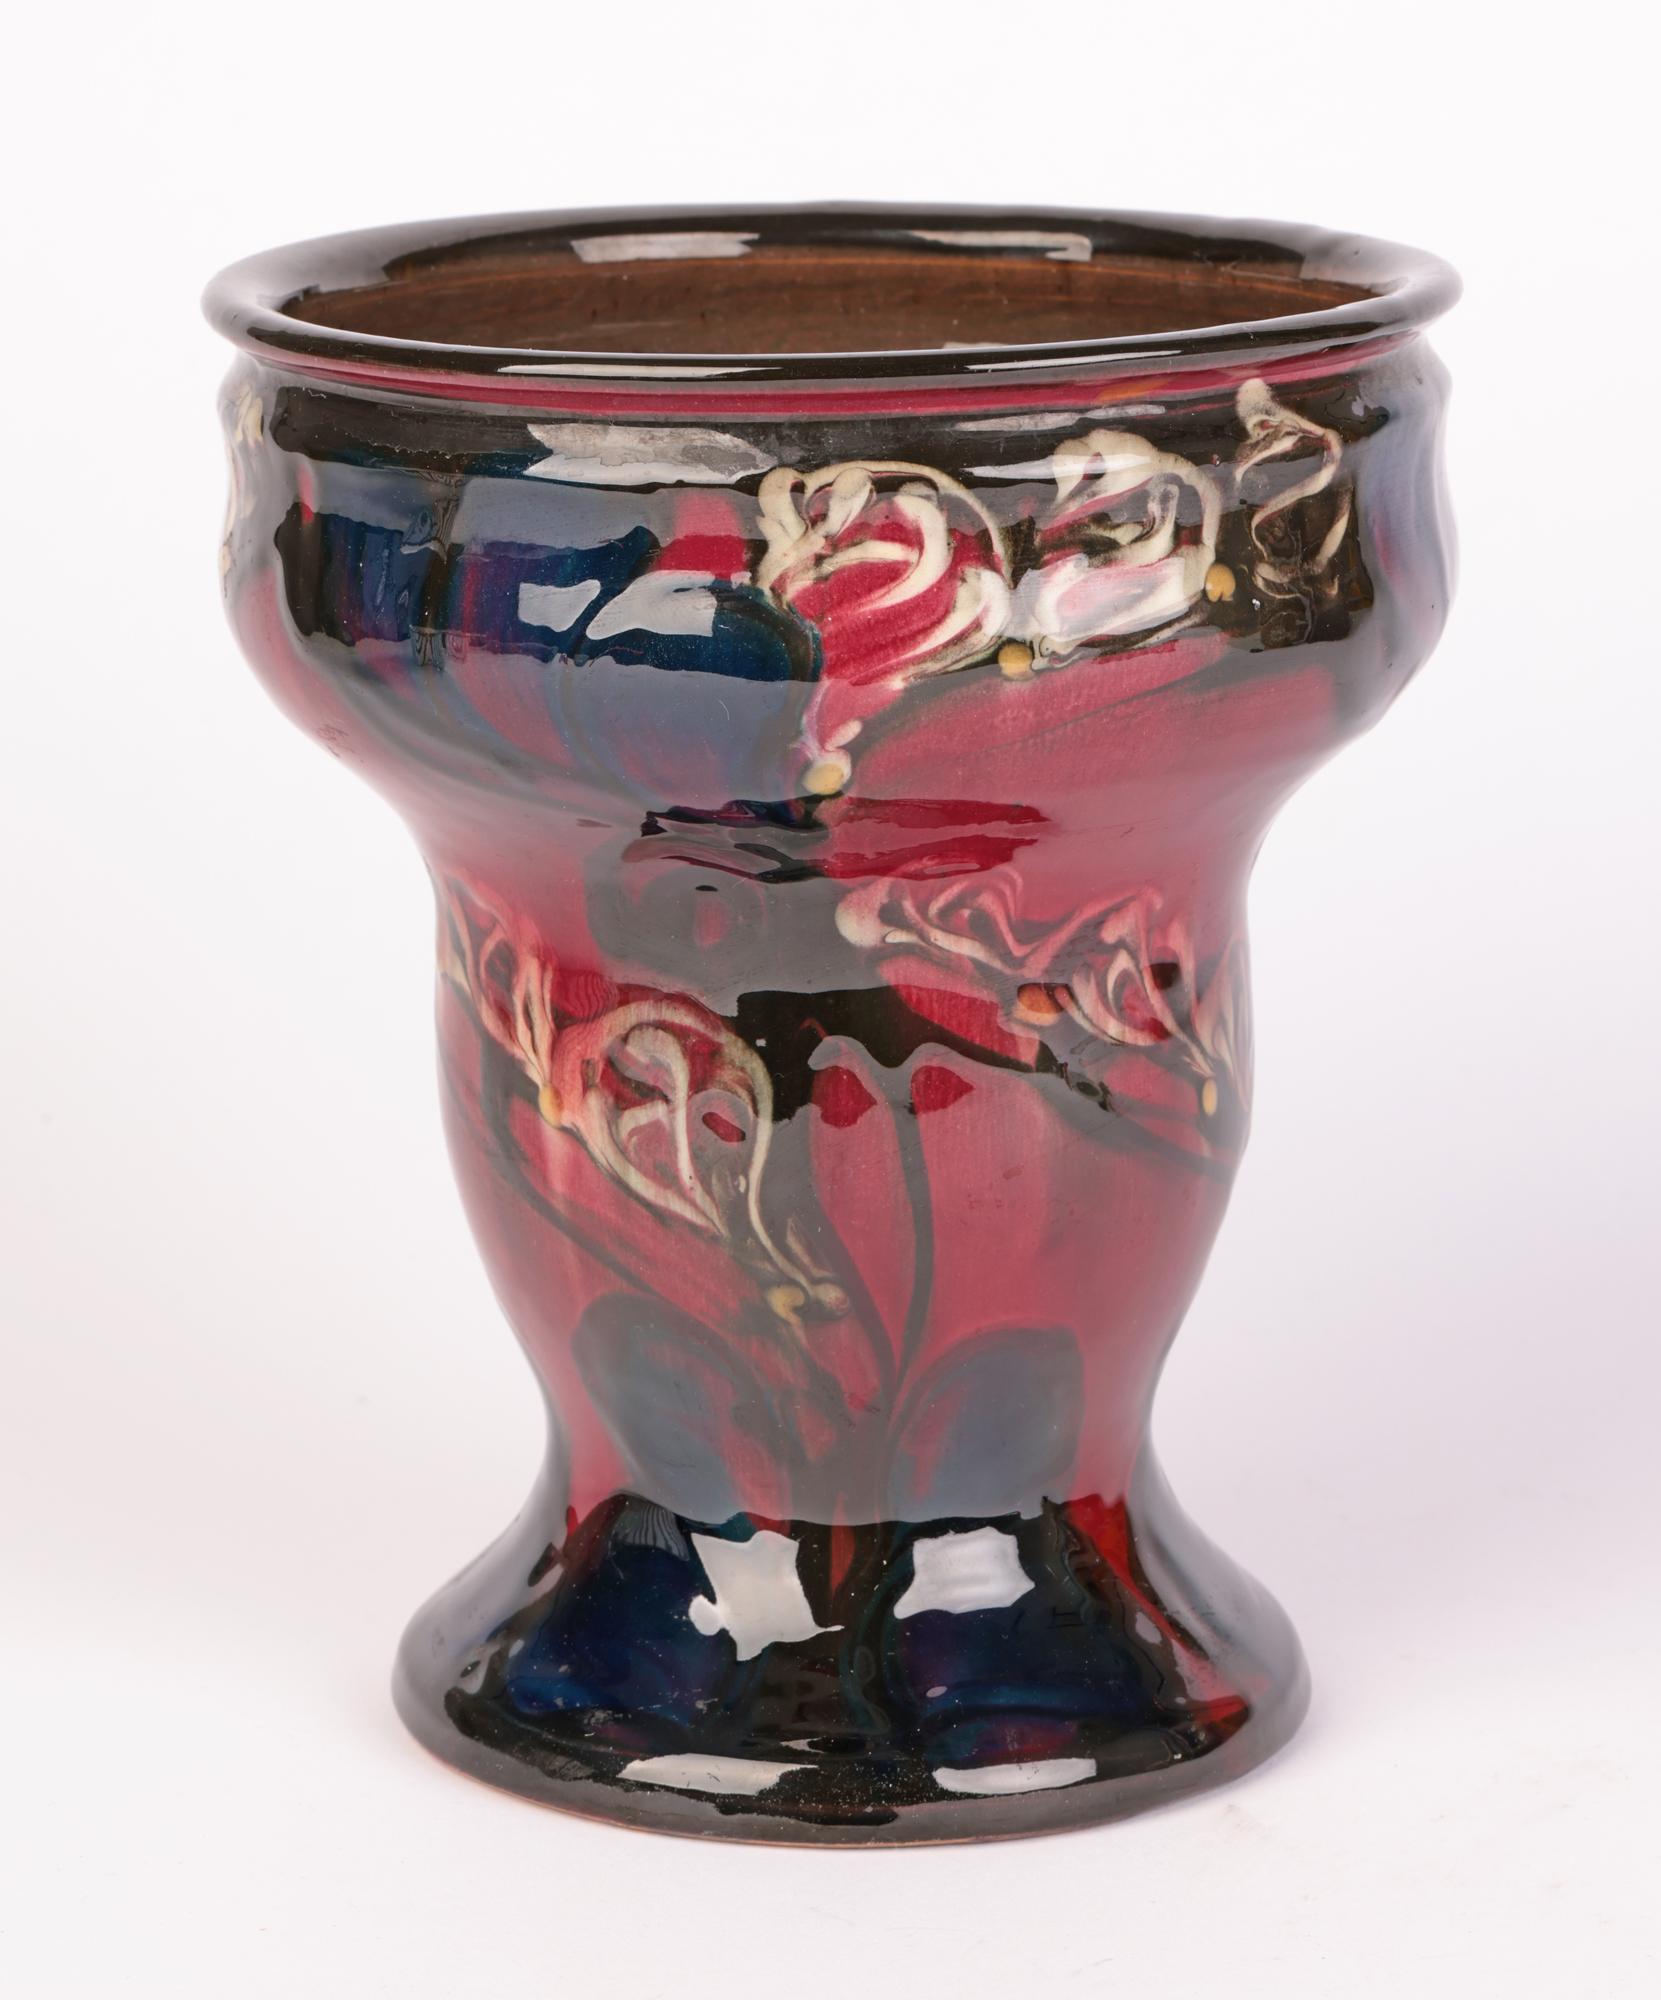 Eiler Londal Danico Skronvirke Art Pottery Abstract Vase For Sale 1